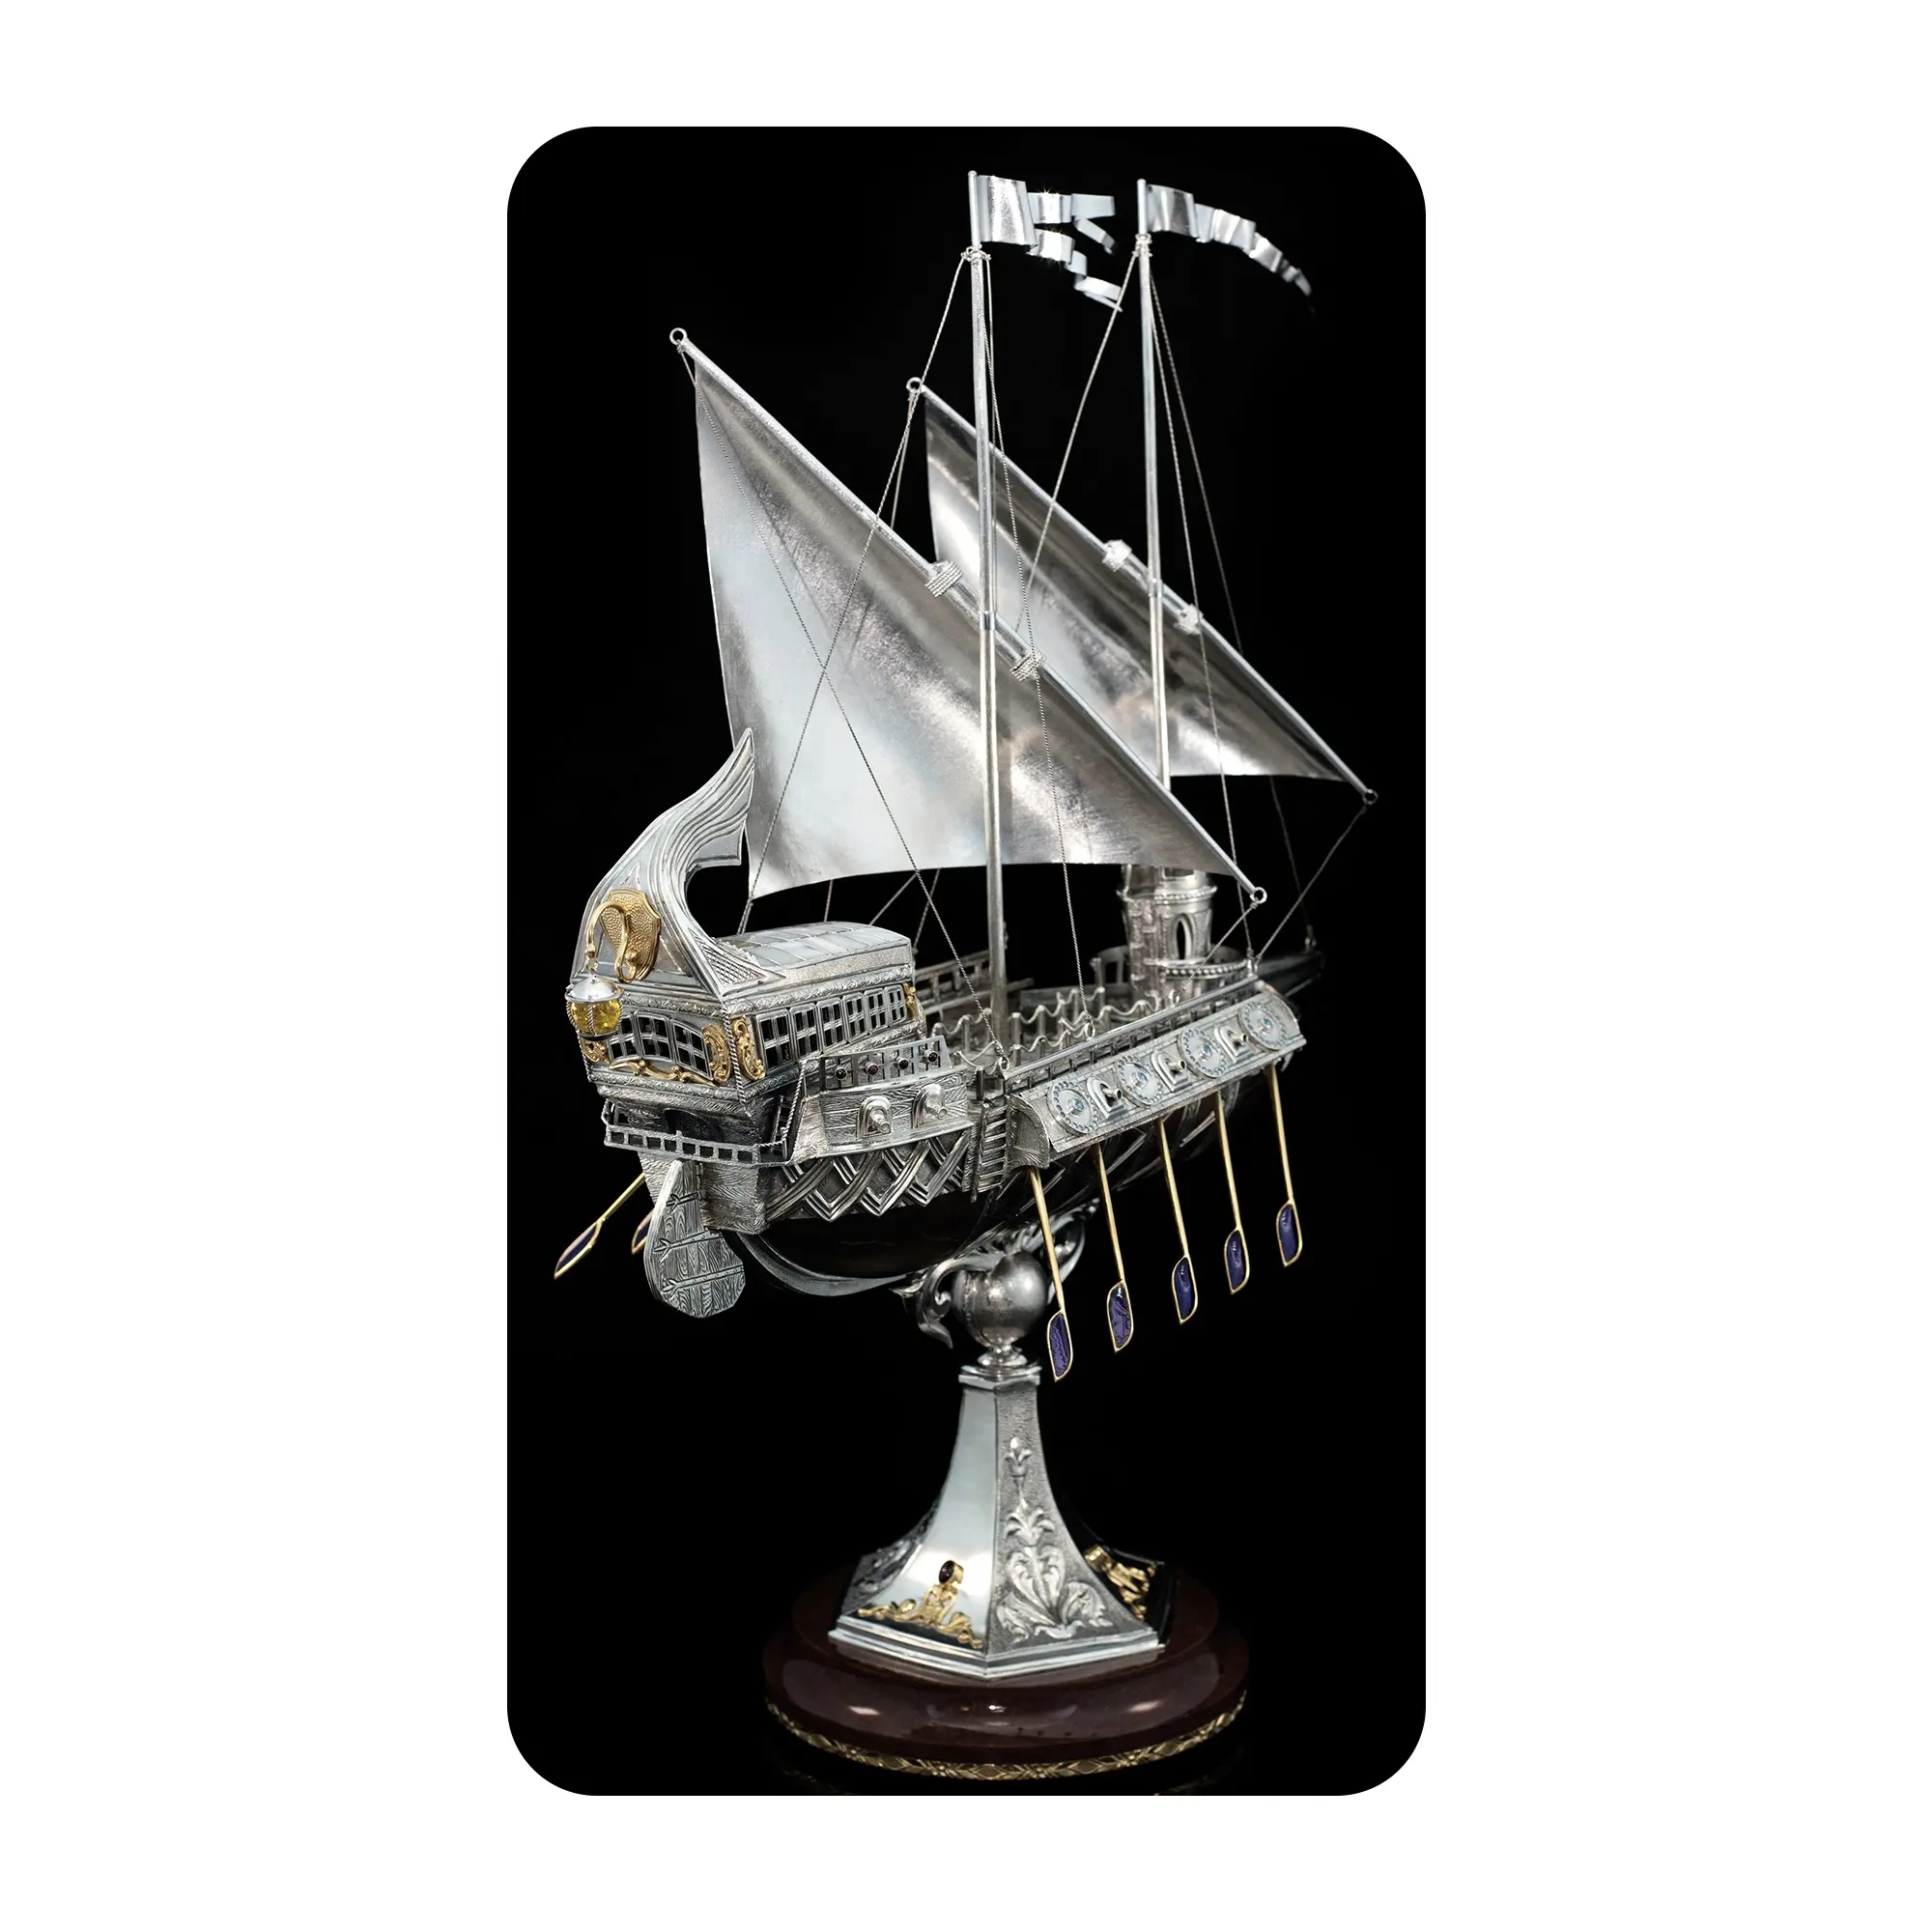 Antike griechische Segelschiff-Statue (Schmuck-Miniatur), aus Sterling silber 925, Topas/Granat/Bernstein-Dekor, tolle Geschenk idee